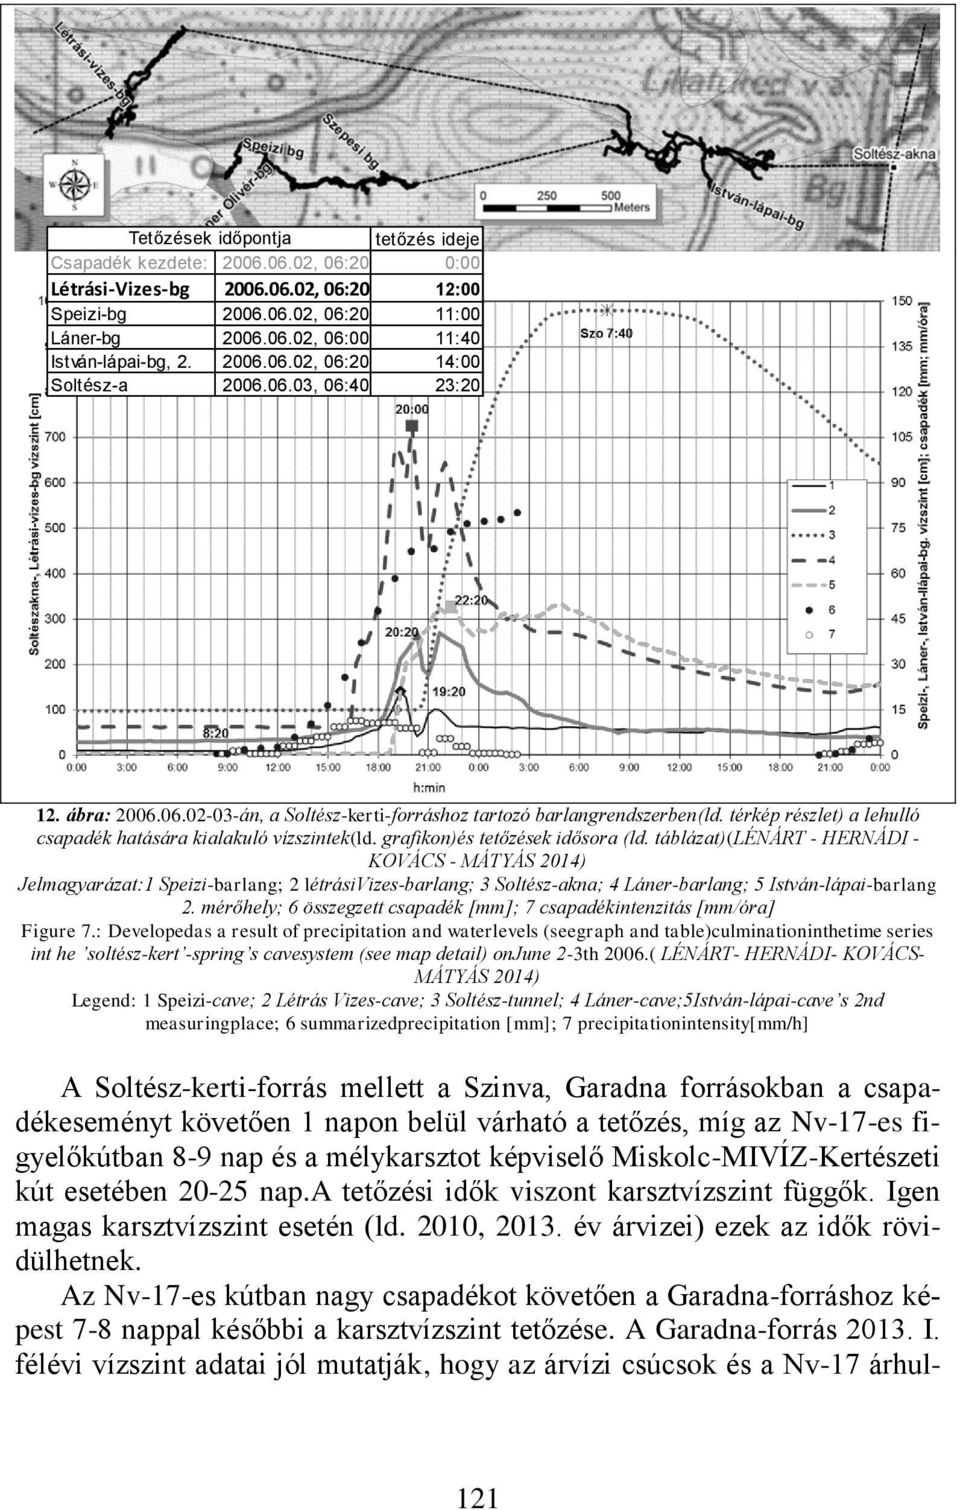 Az Nv-17-es kútban nagy csapadékot követően a Garadna-forráshoz képest 7-8 nappal későbbi a karsztvízszint tetőzése. A Garadna-forrás 2013. I.